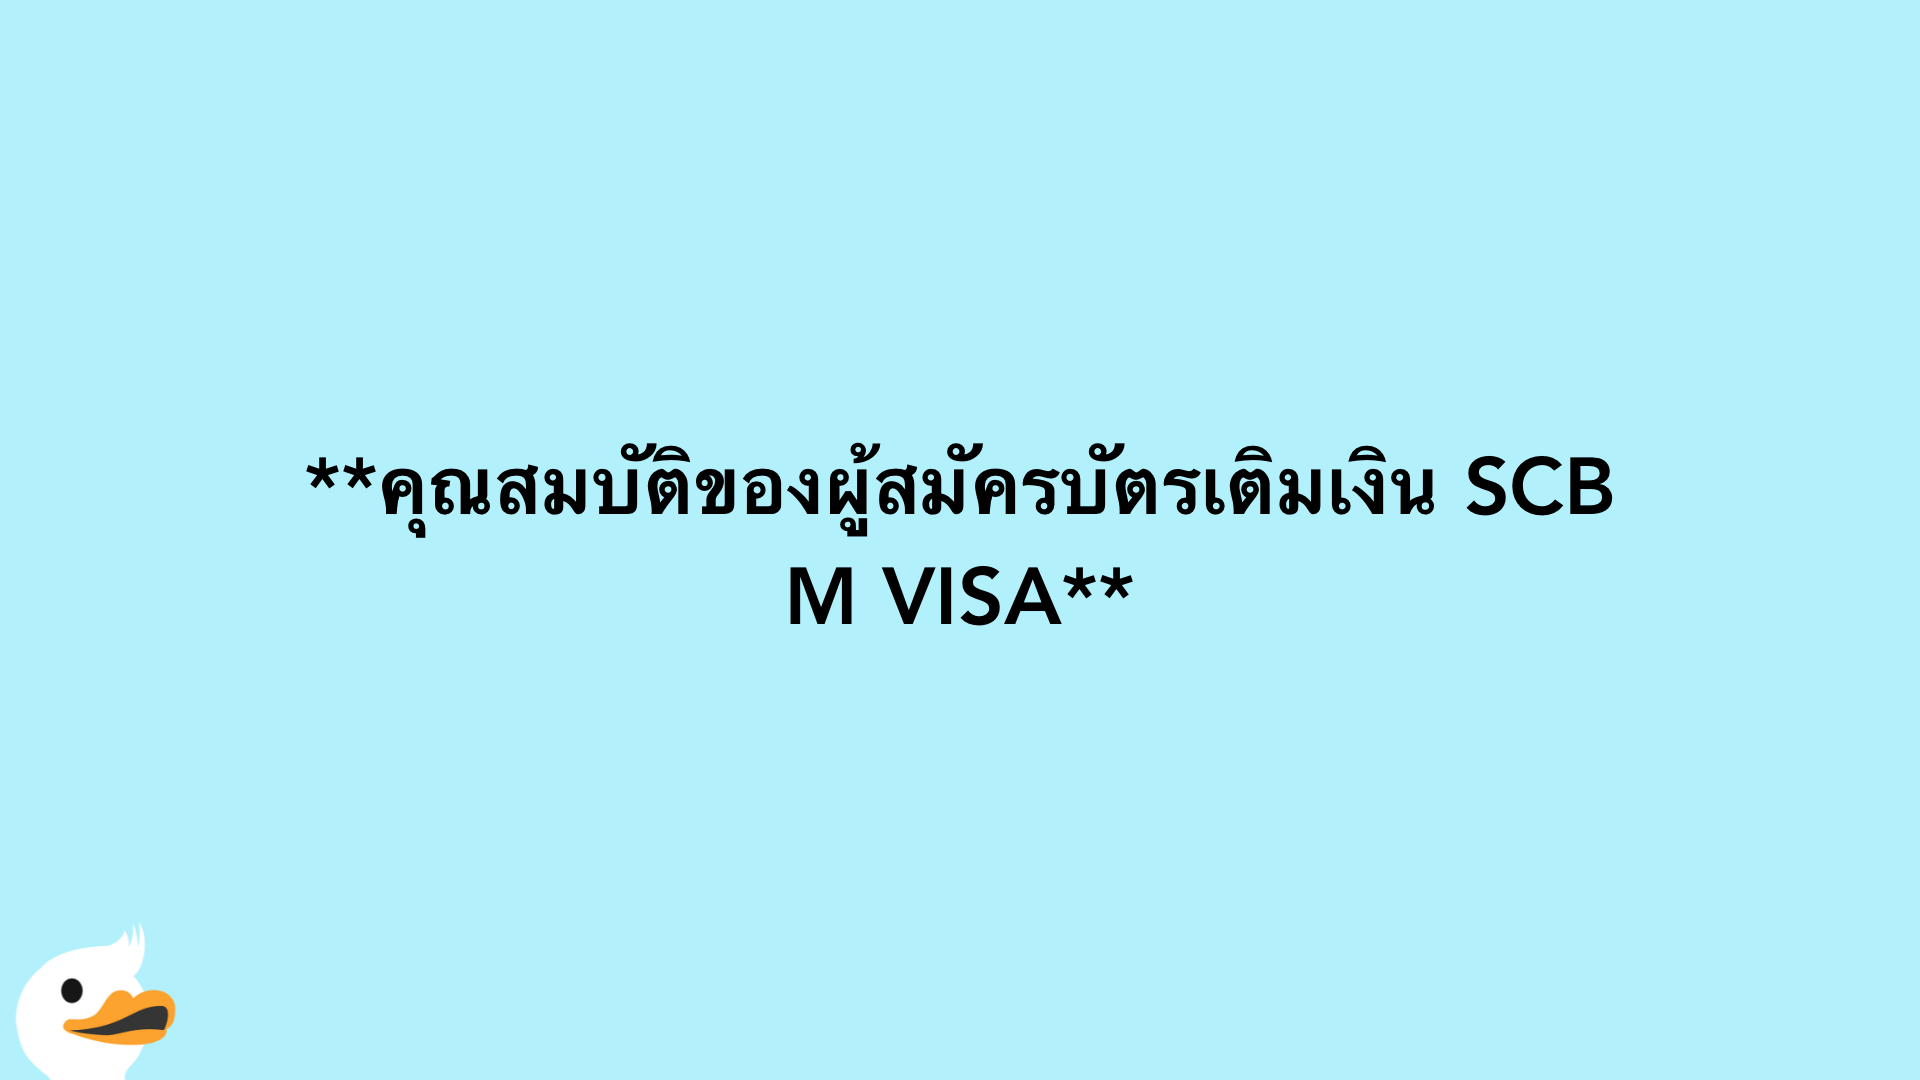 คุณสมบัติของผู้สมัครบัตรเติมเงิน SCB M VISA